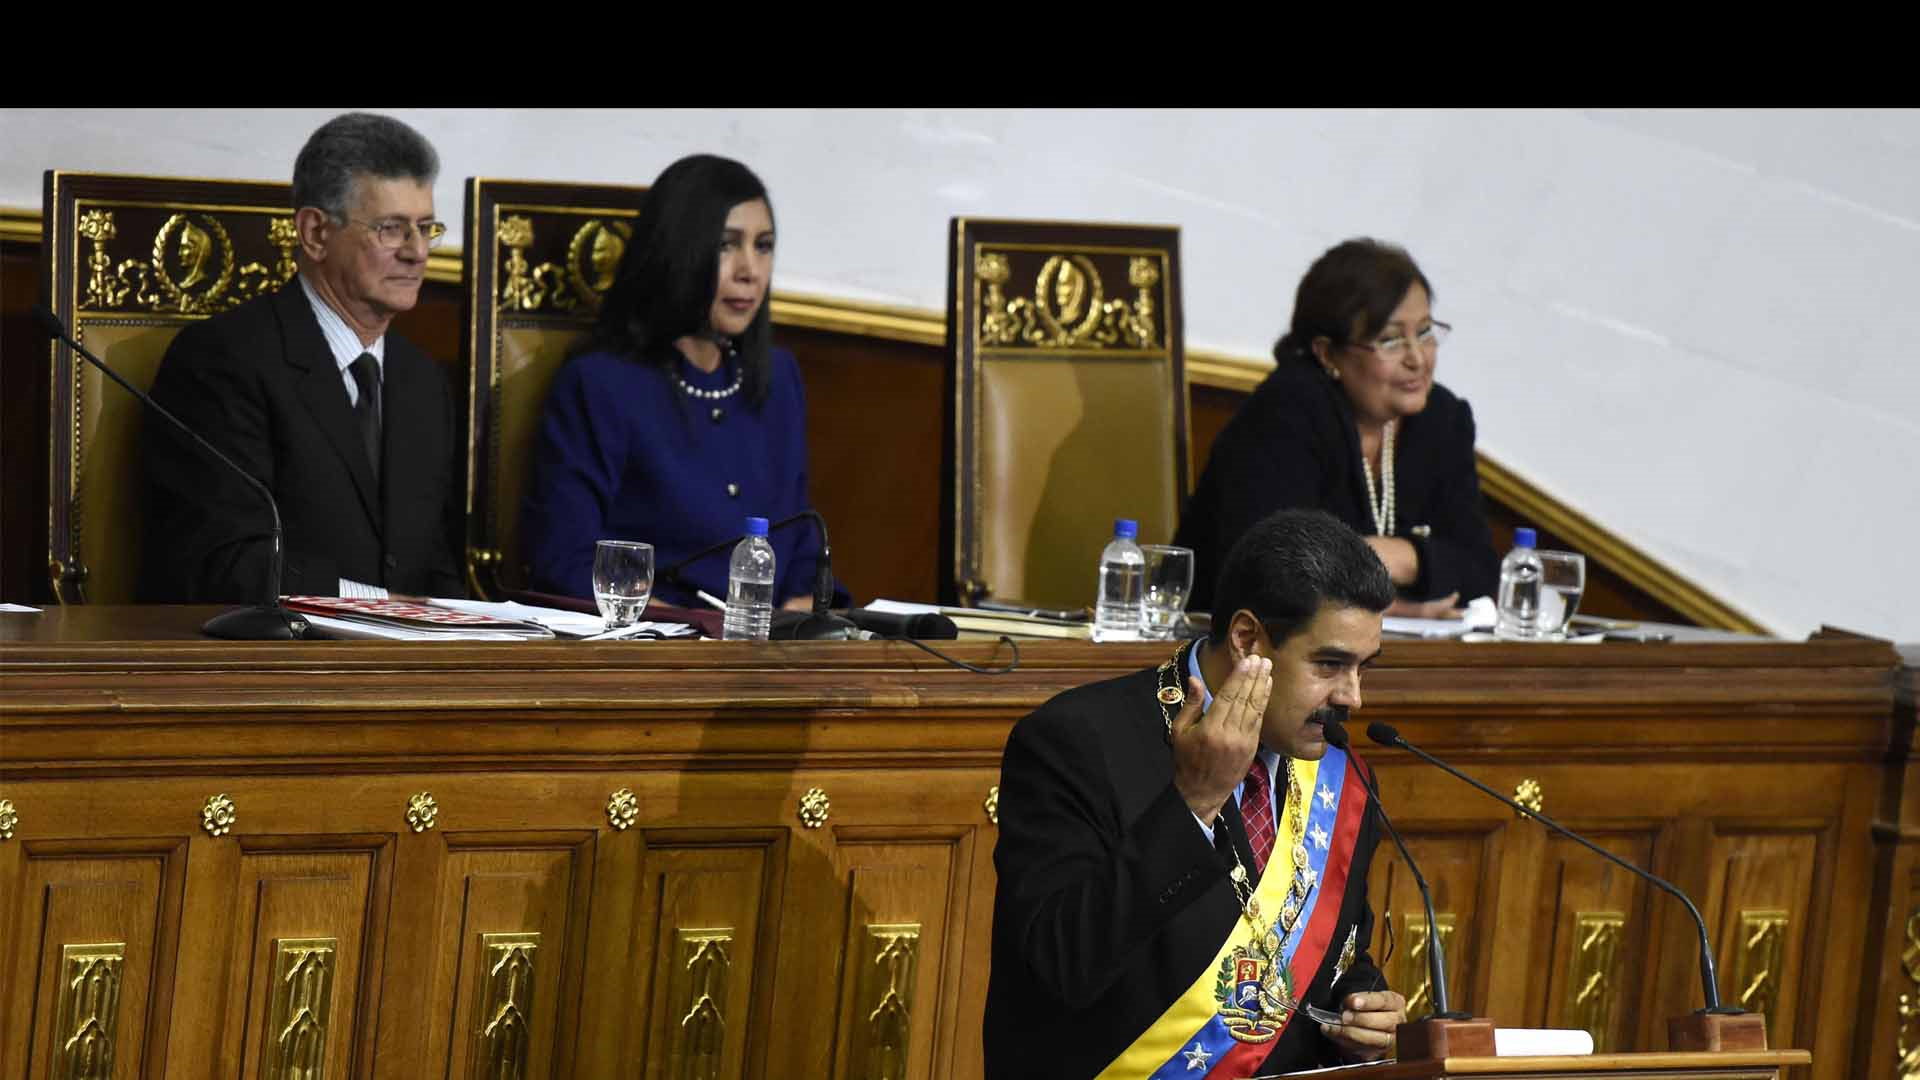 La constitución venezolana permite a la AN emitir sanciones en contra del presidente, más no removerlo de su cargo